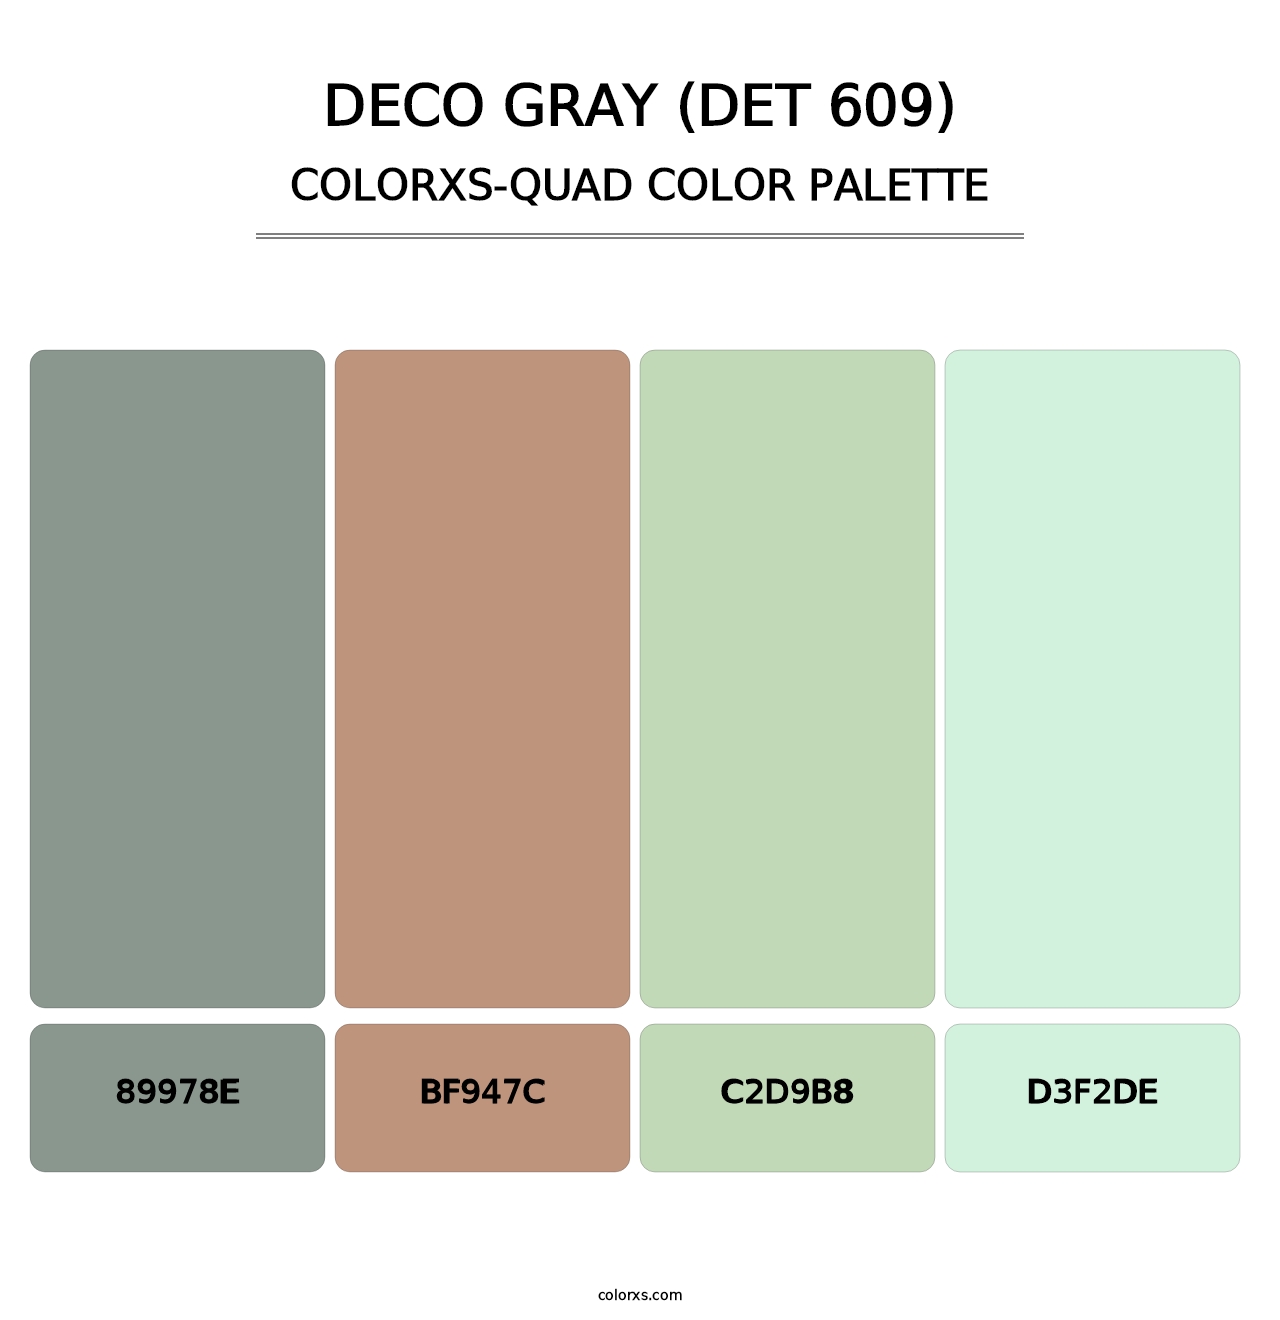 Deco Gray (DET 609) - Colorxs Quad Palette